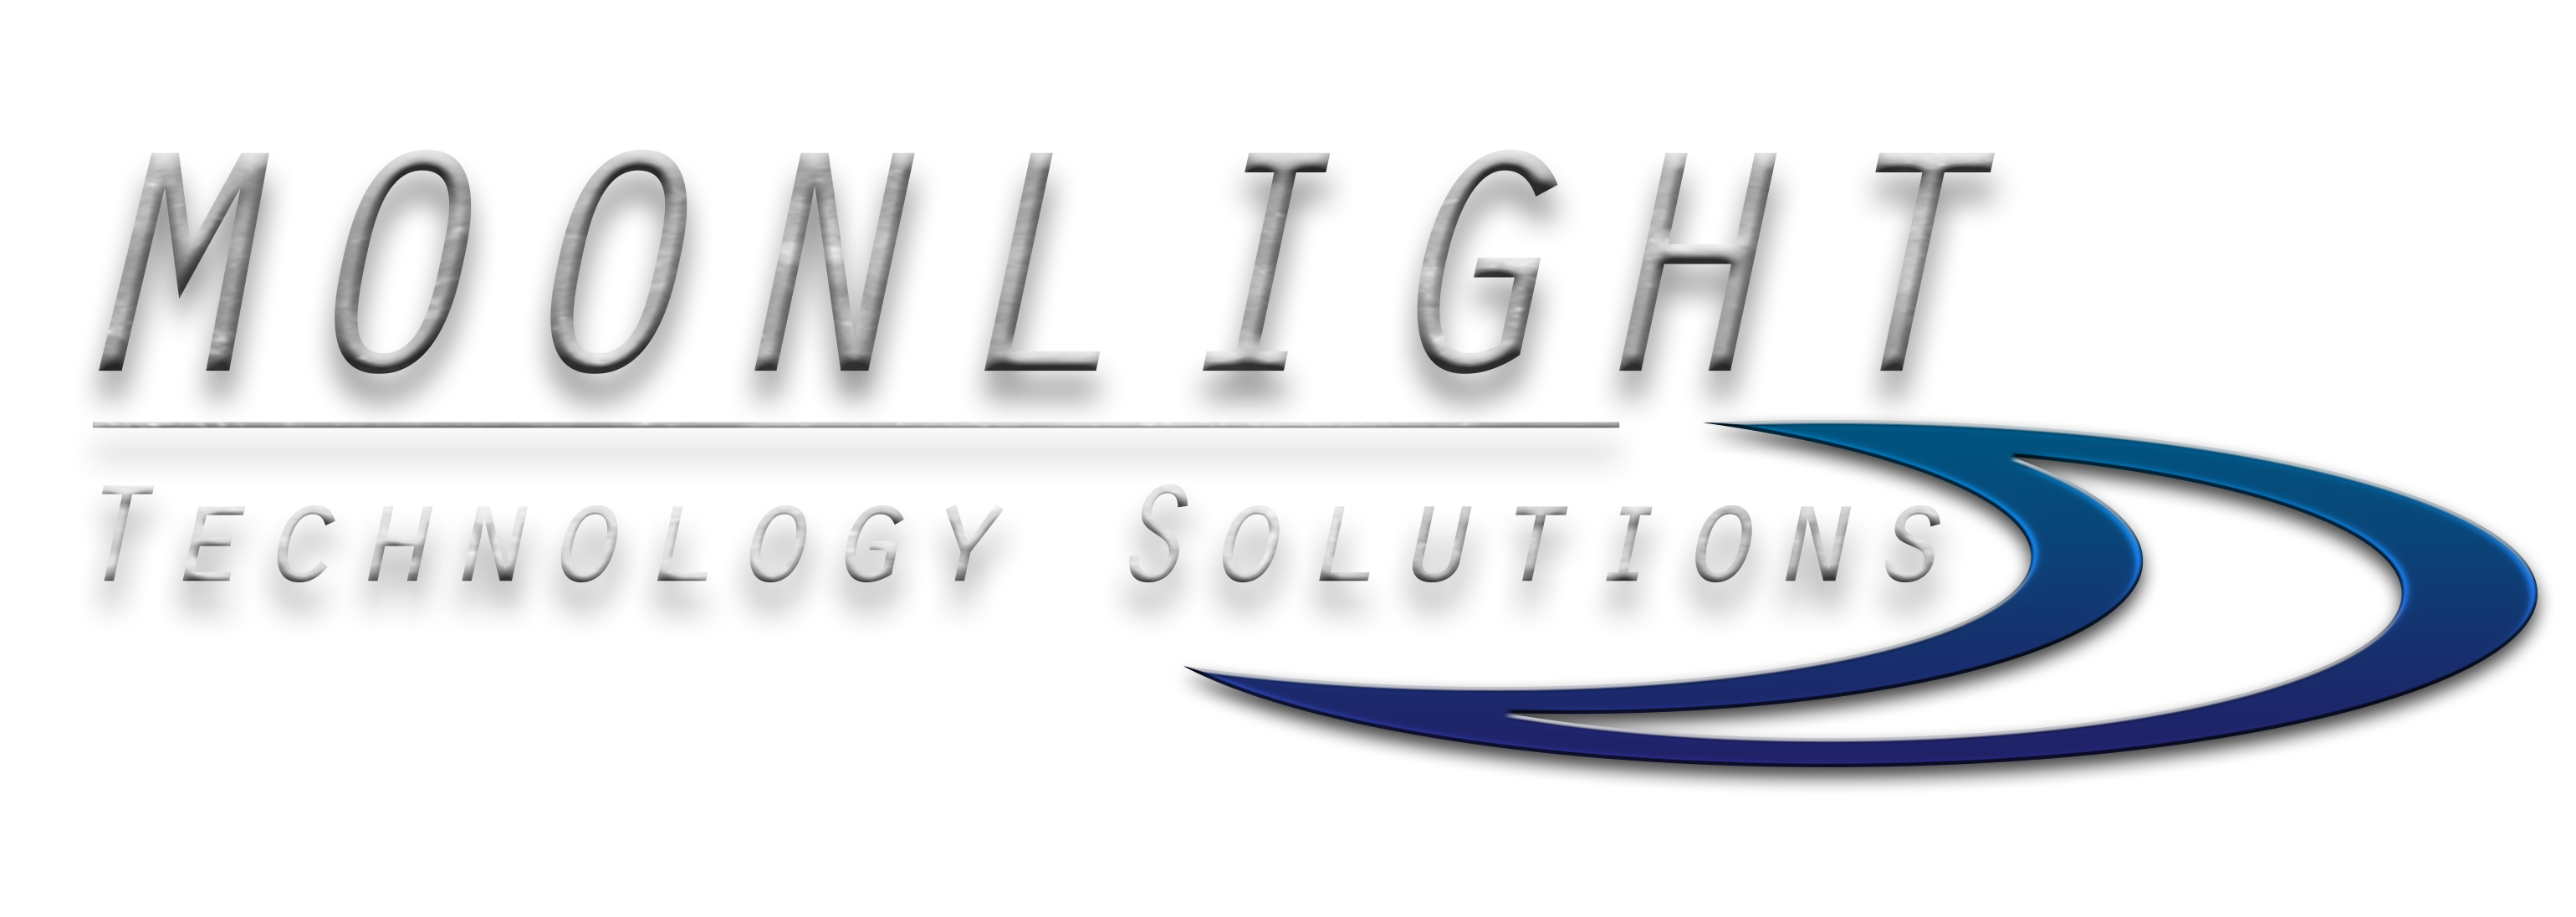 Moonlight Technology Solutions Logo